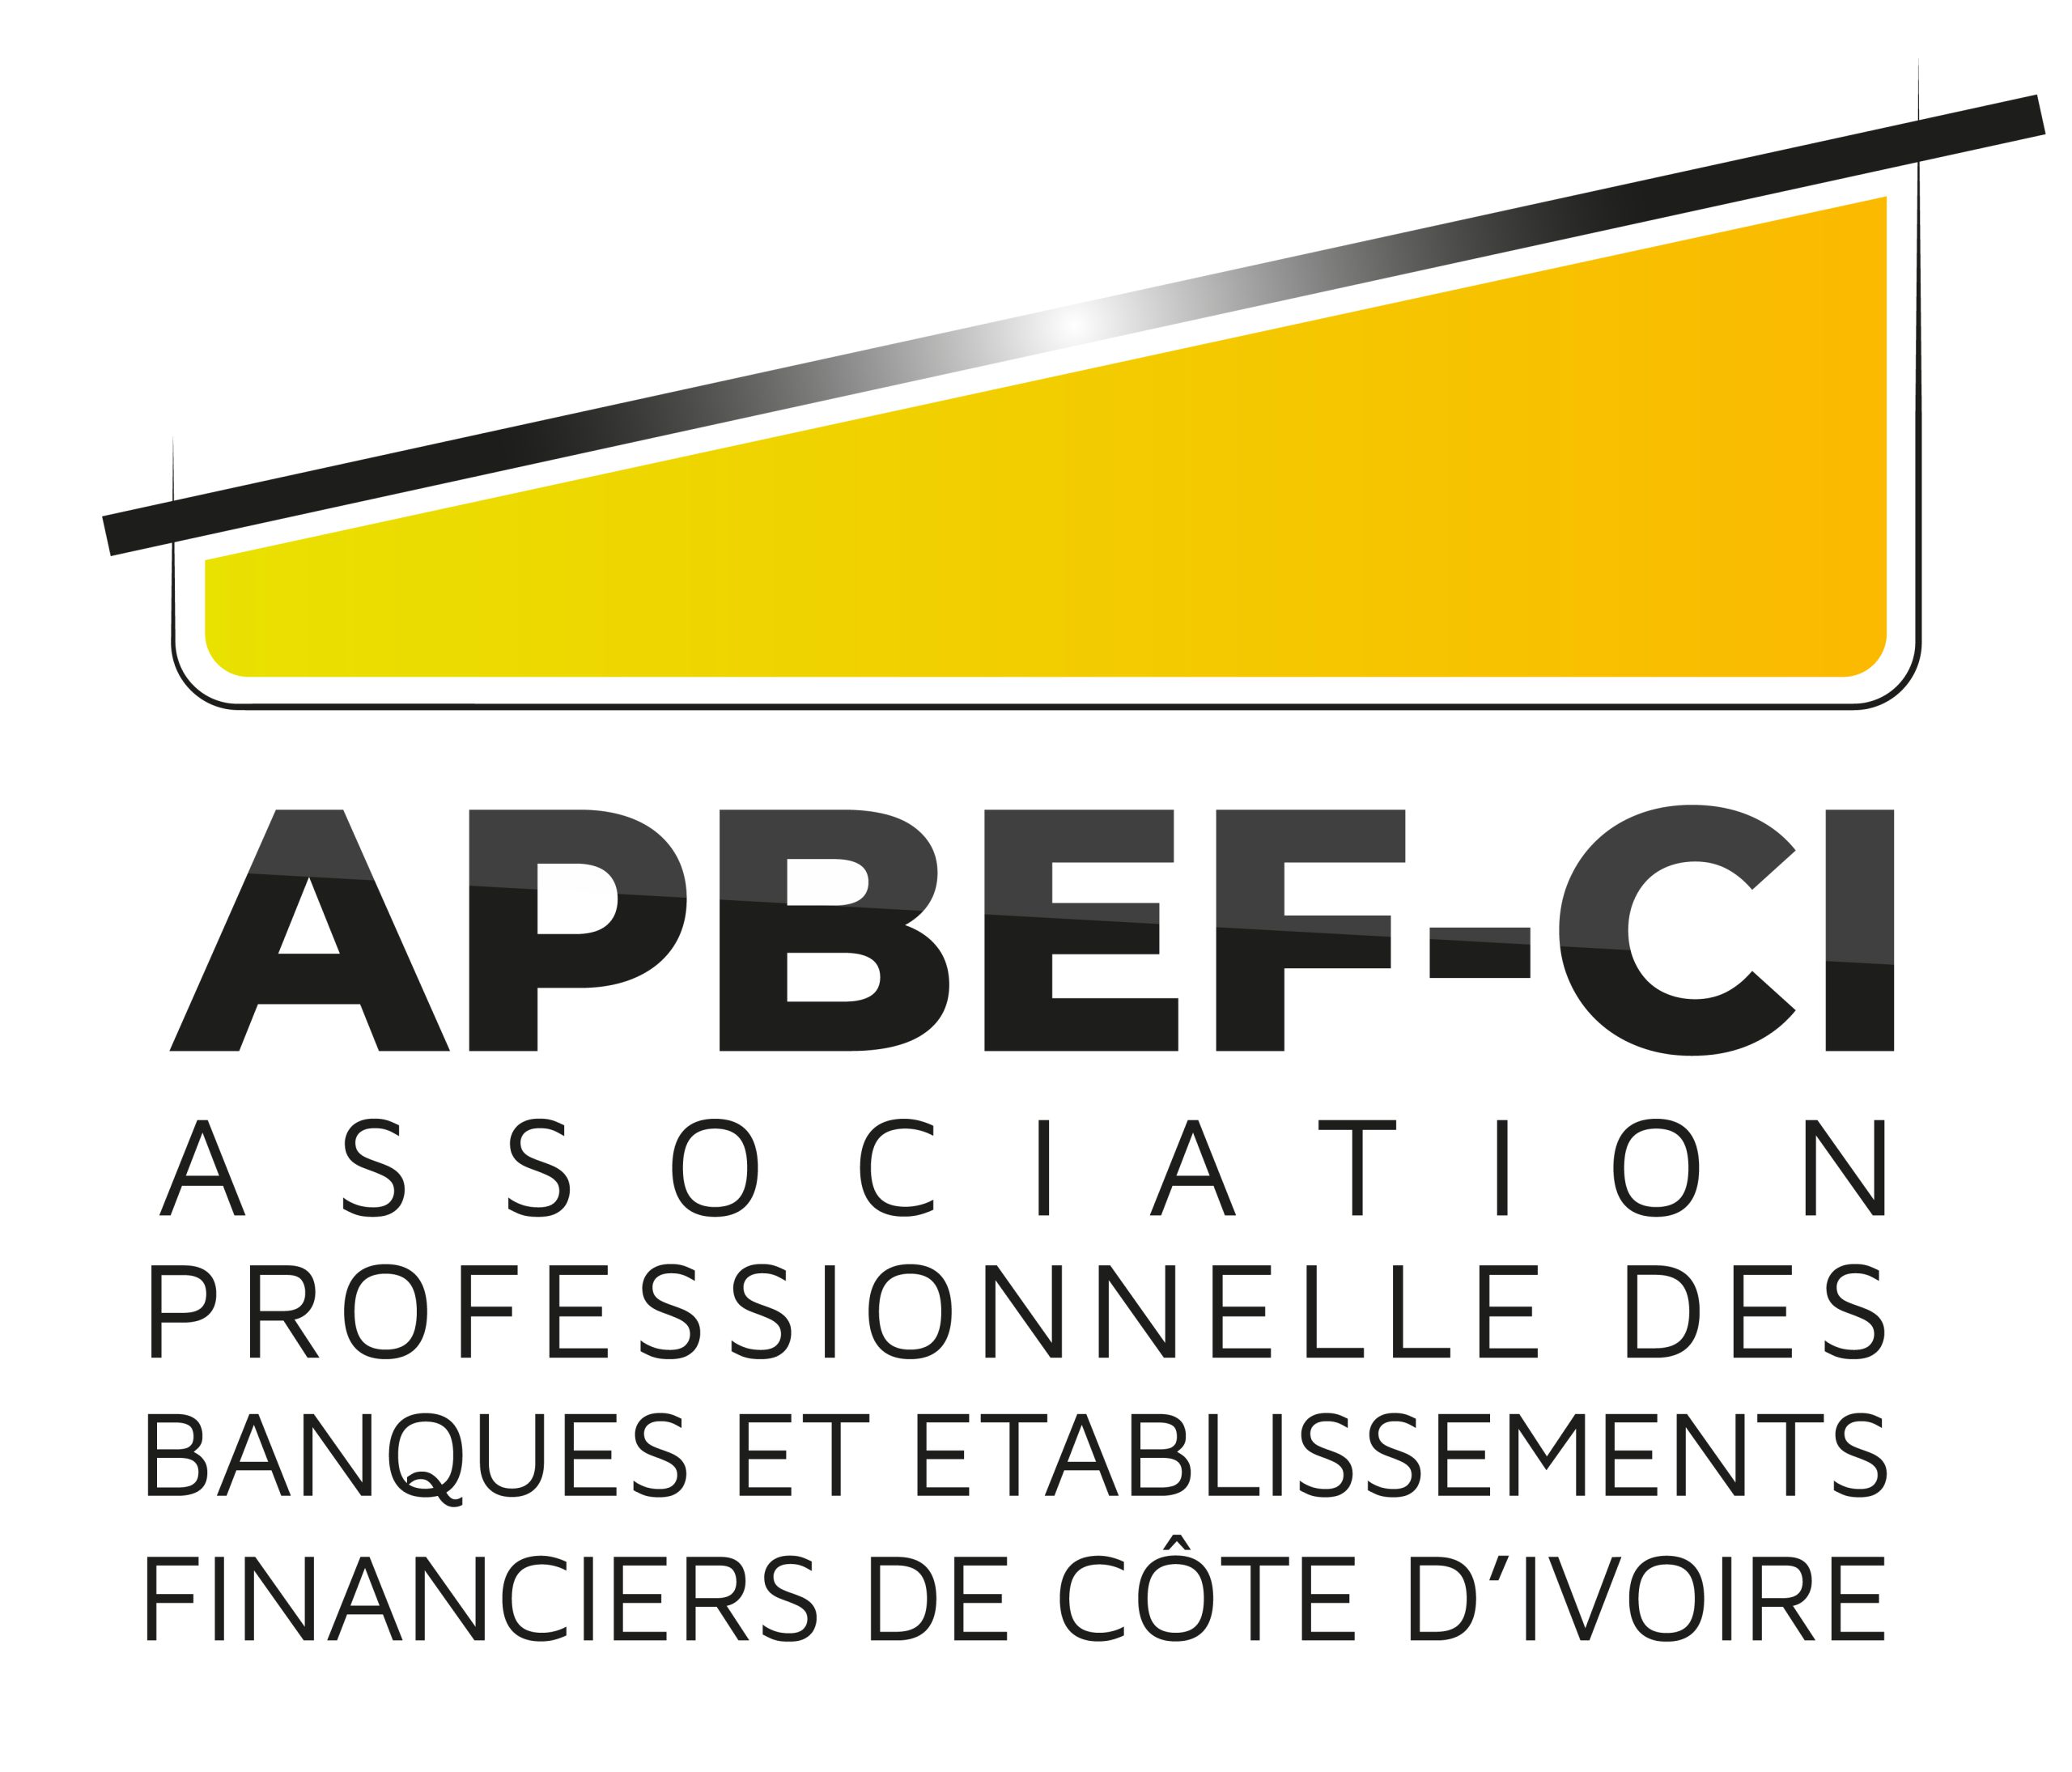 APBEF-CI